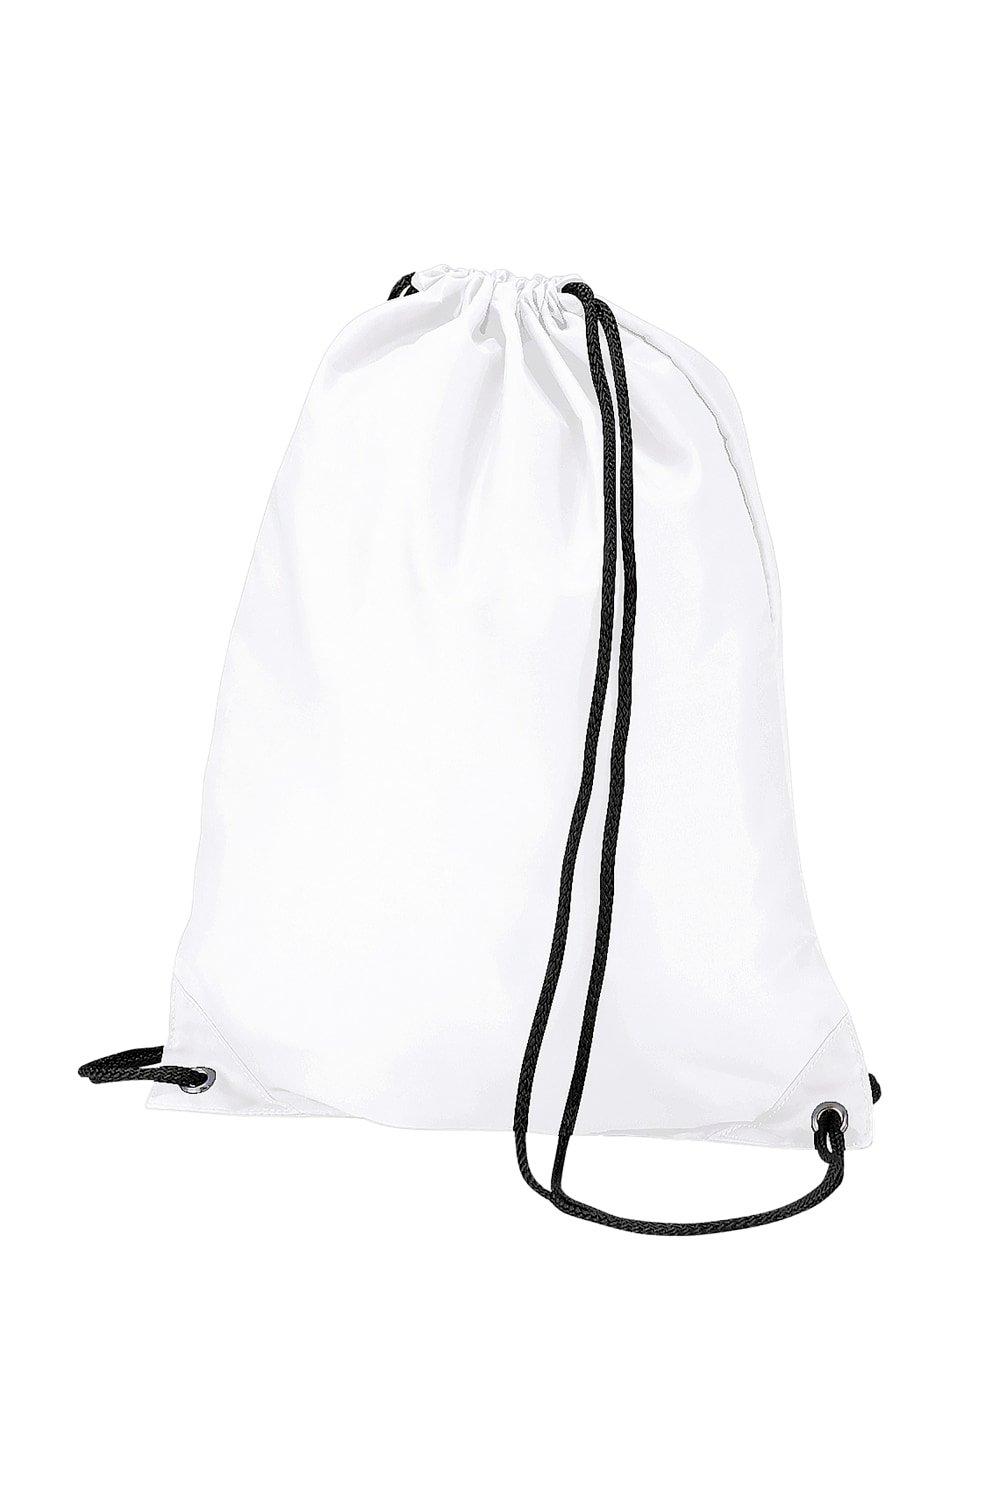 Бюджетная водостойкая спортивная сумка Gymsac на шнурке (11 л) Bagbase, белый